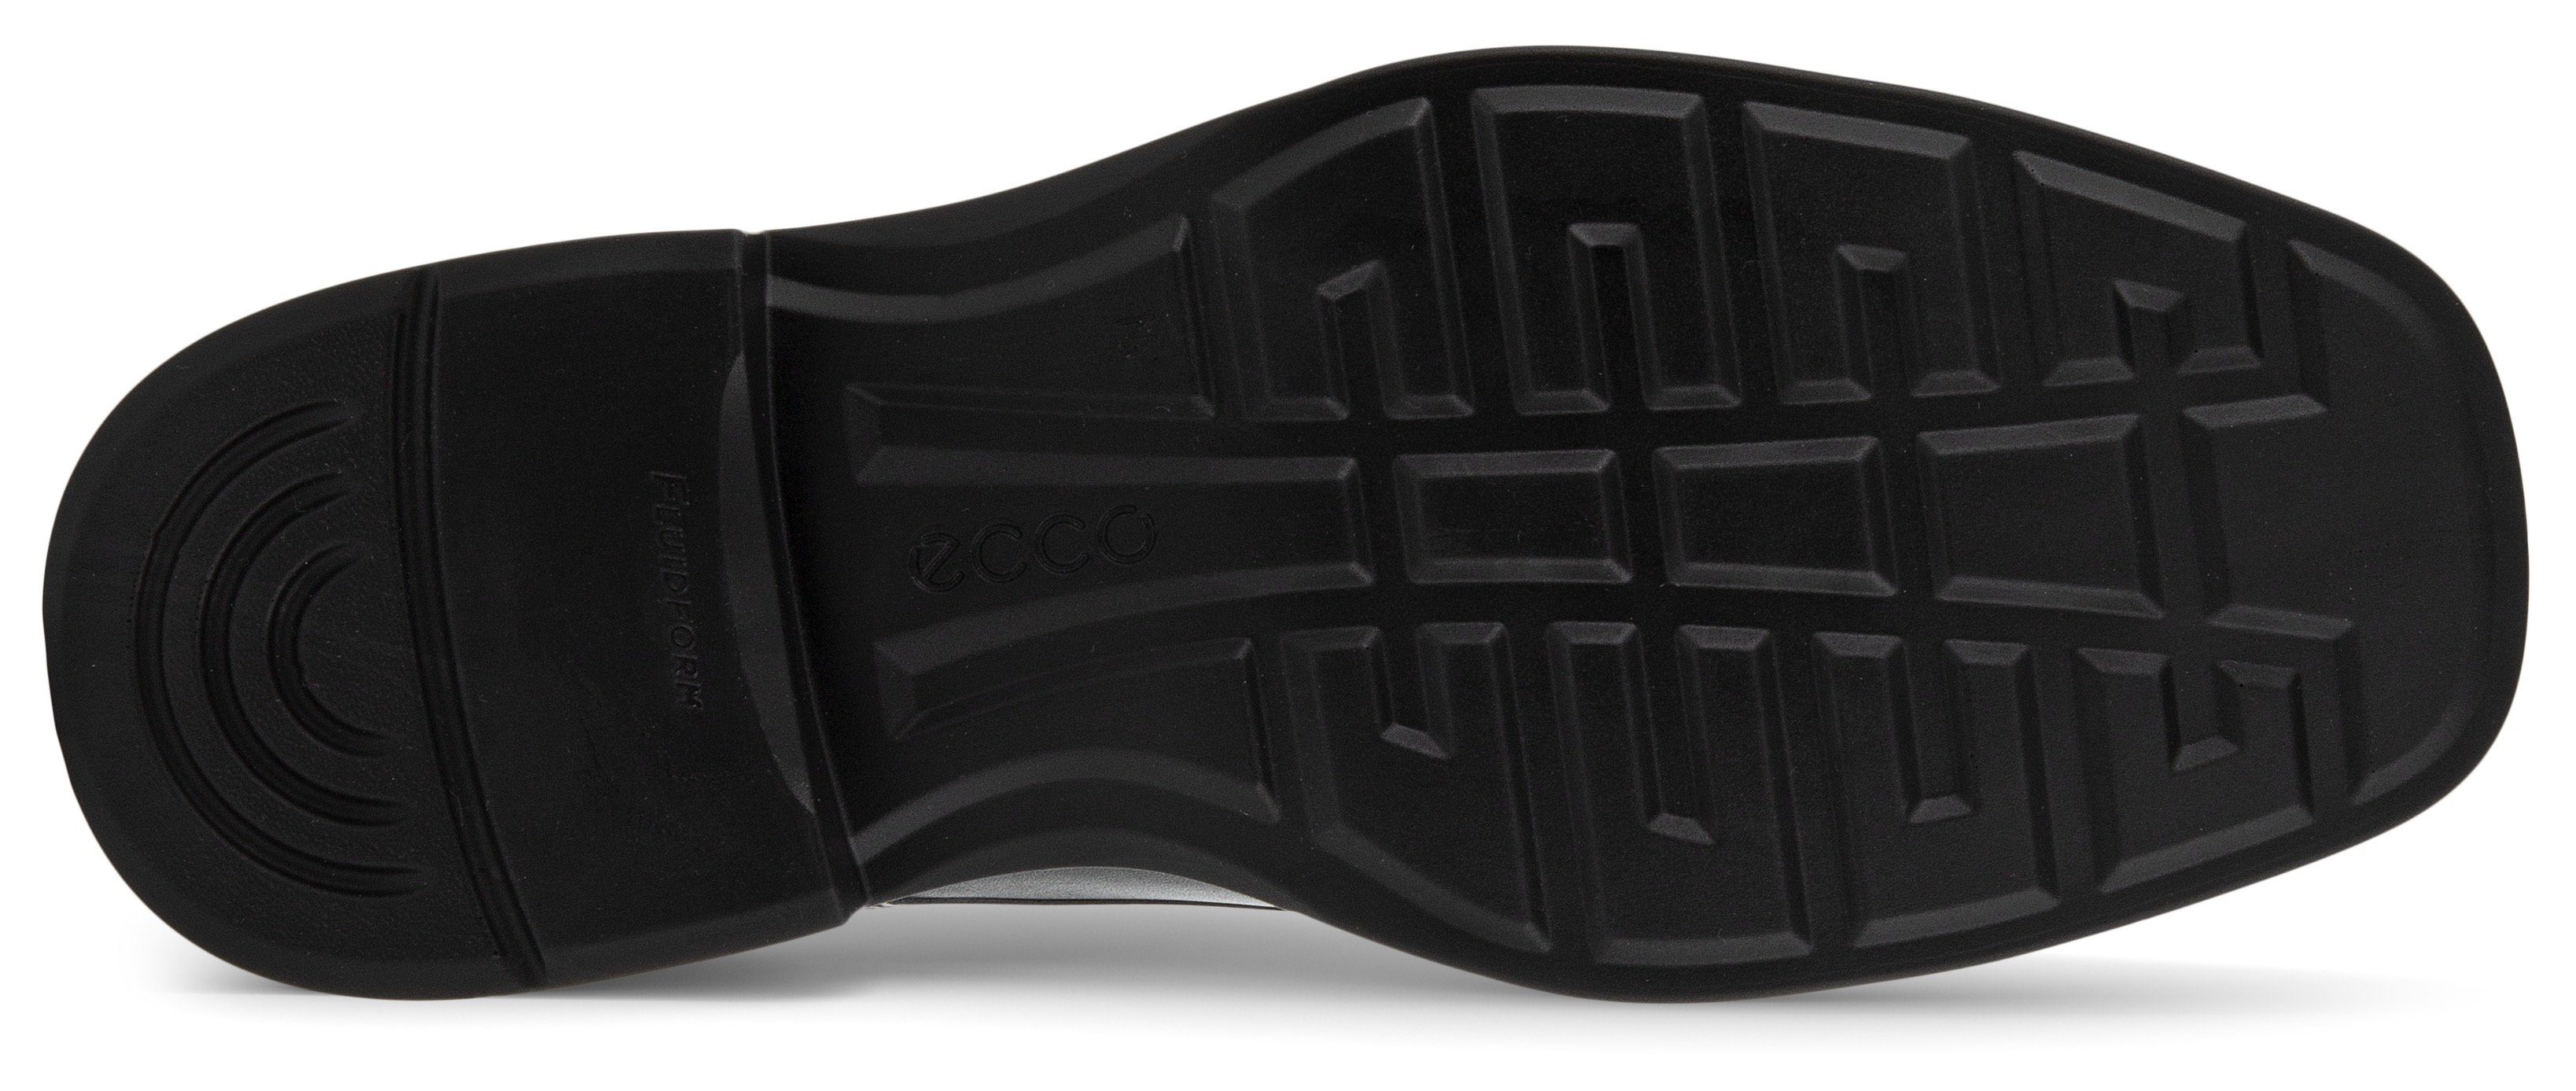 Helsinki Fußbett herausnehmbarem mit Schnürschuh 2 schwarz Ecco